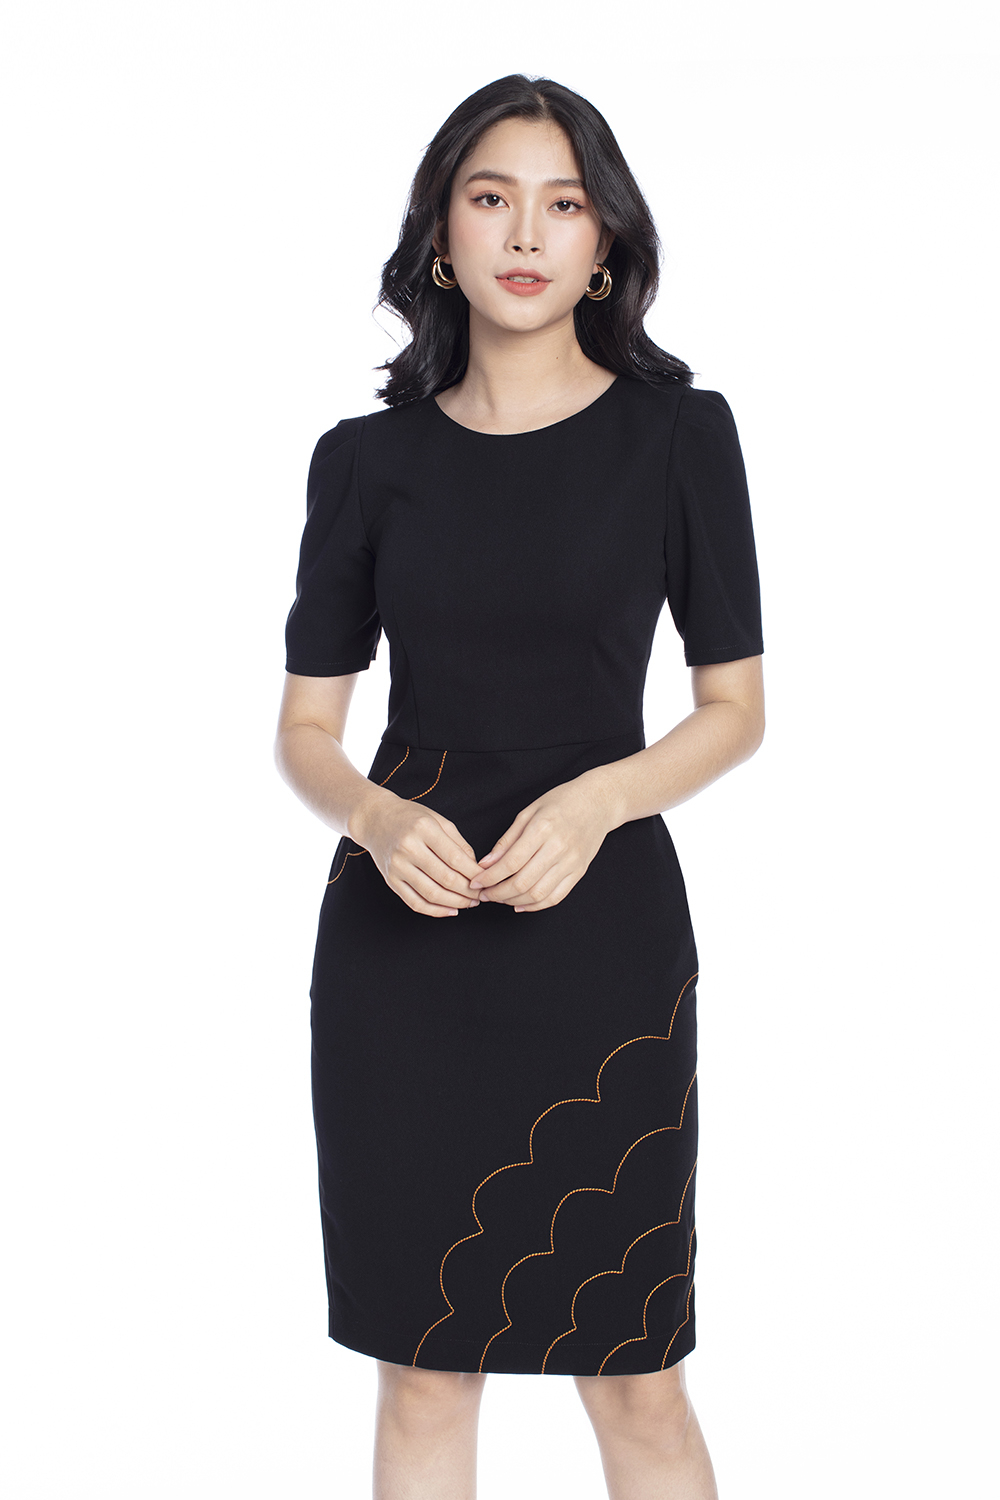 Đầm đen ôm body phối lưới đính nơ eo KK10306  Thời trang công sở KK  Fashion